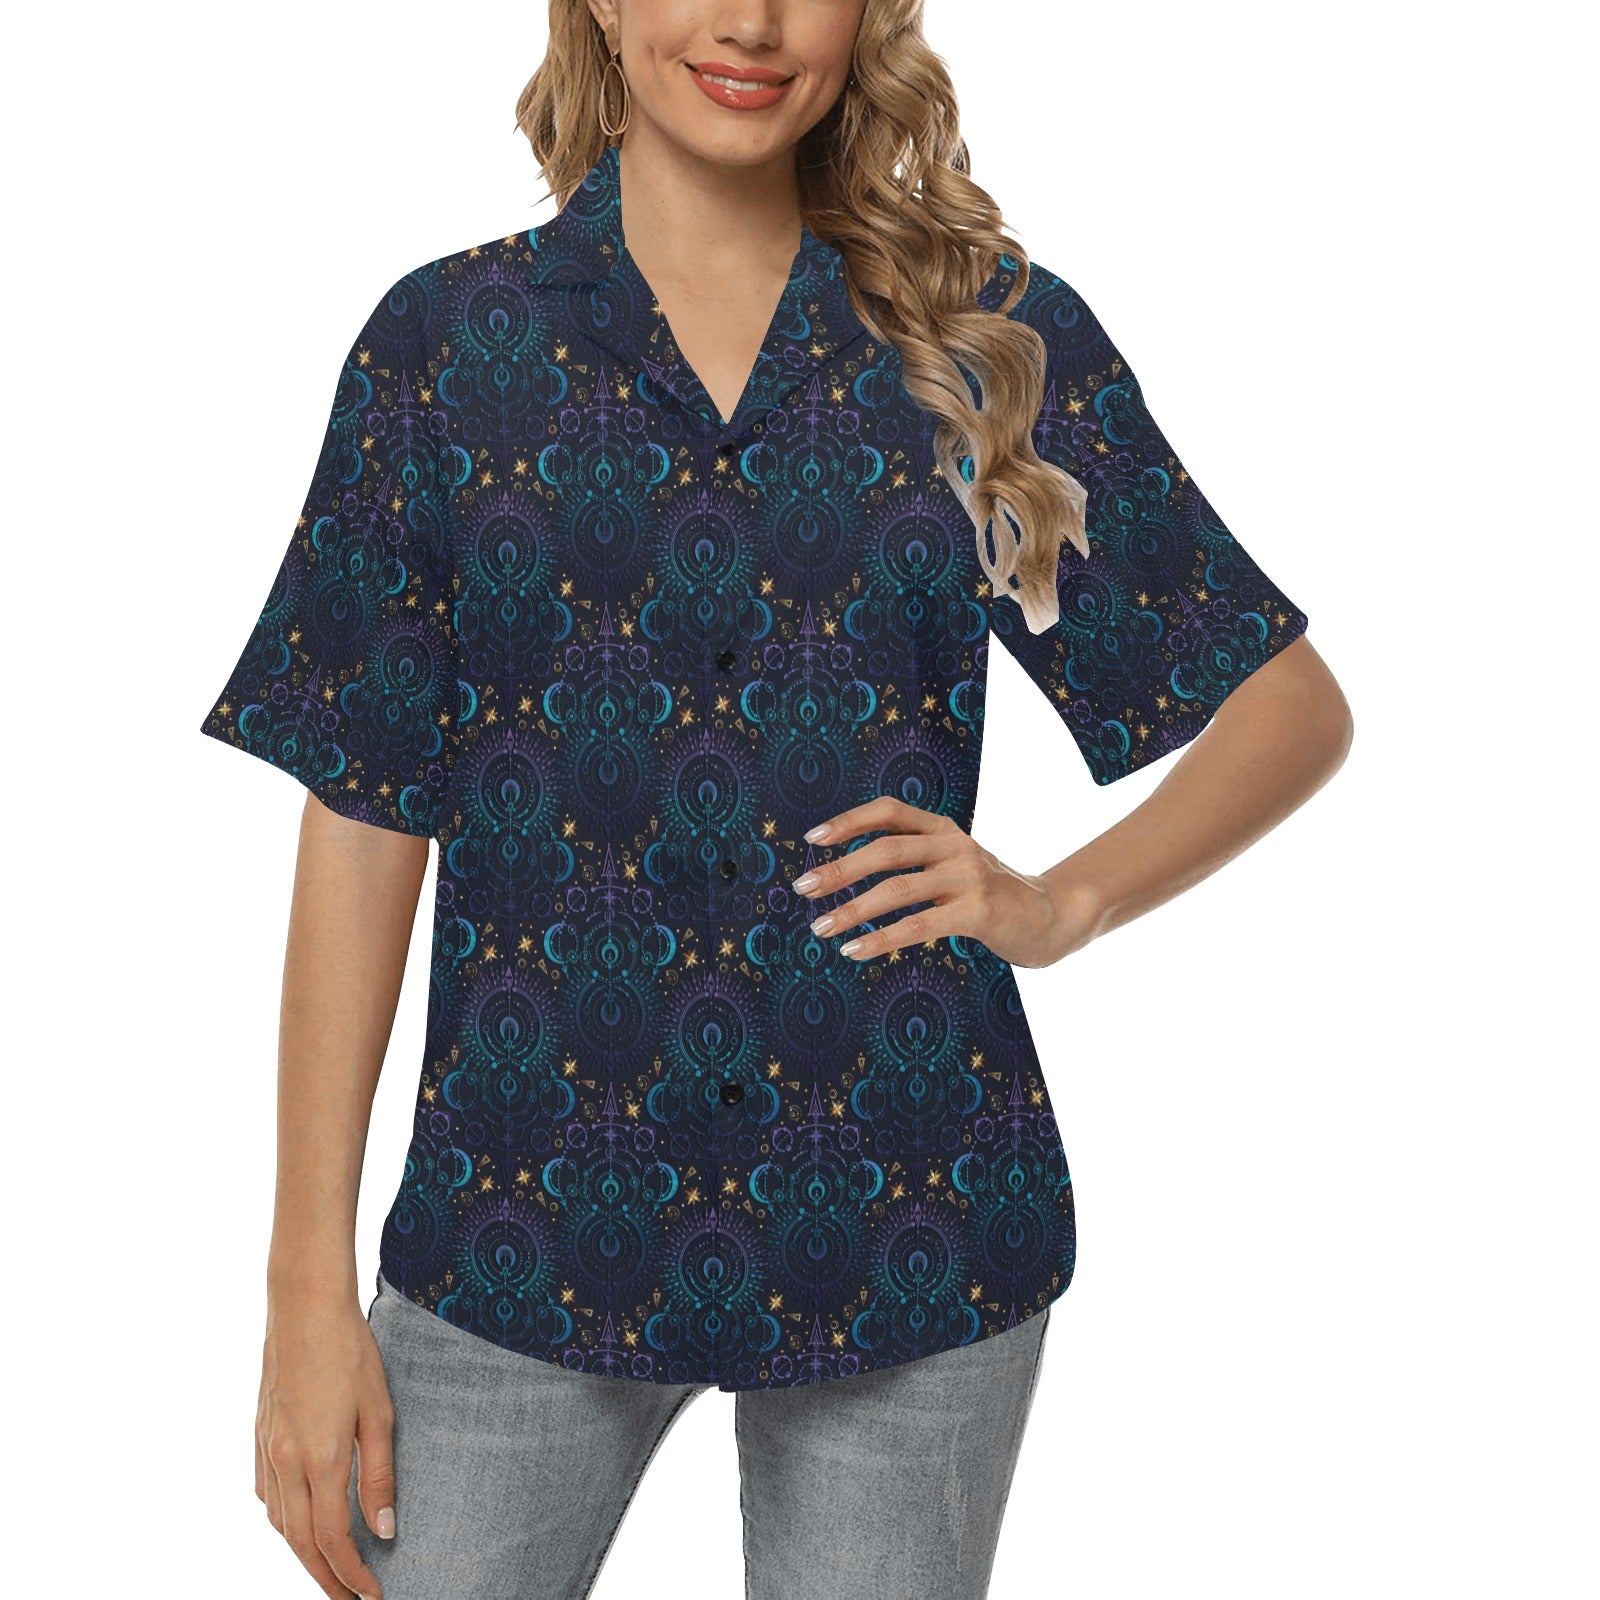 Celestial Pattern Print Design 06 Women's Hawaiian Shirt